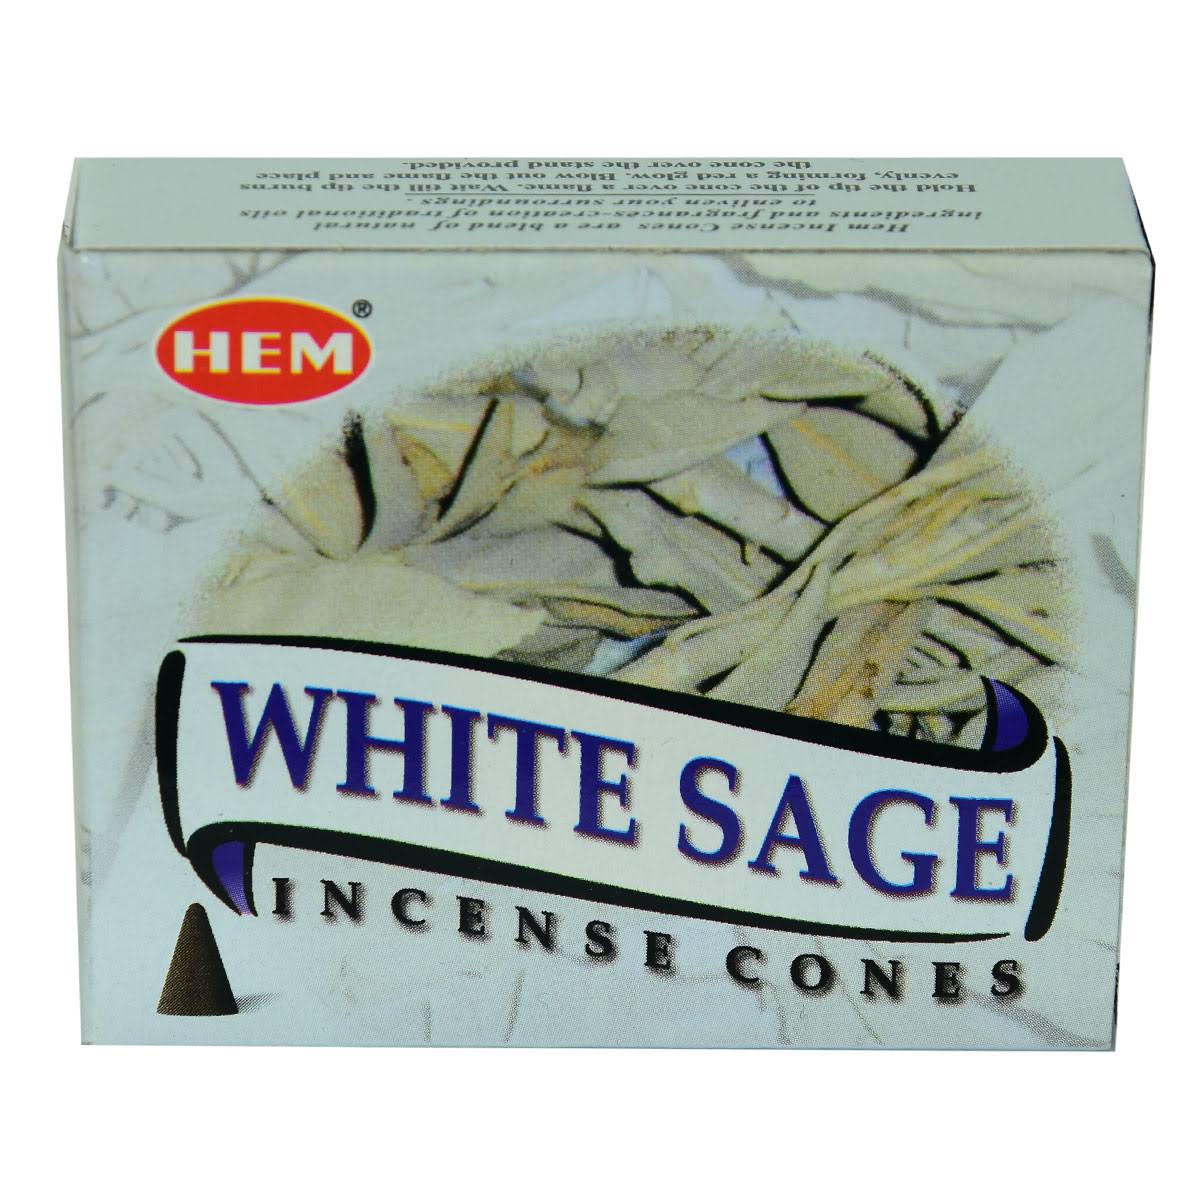 Hem White Sage Incense Cones - 10 Cones